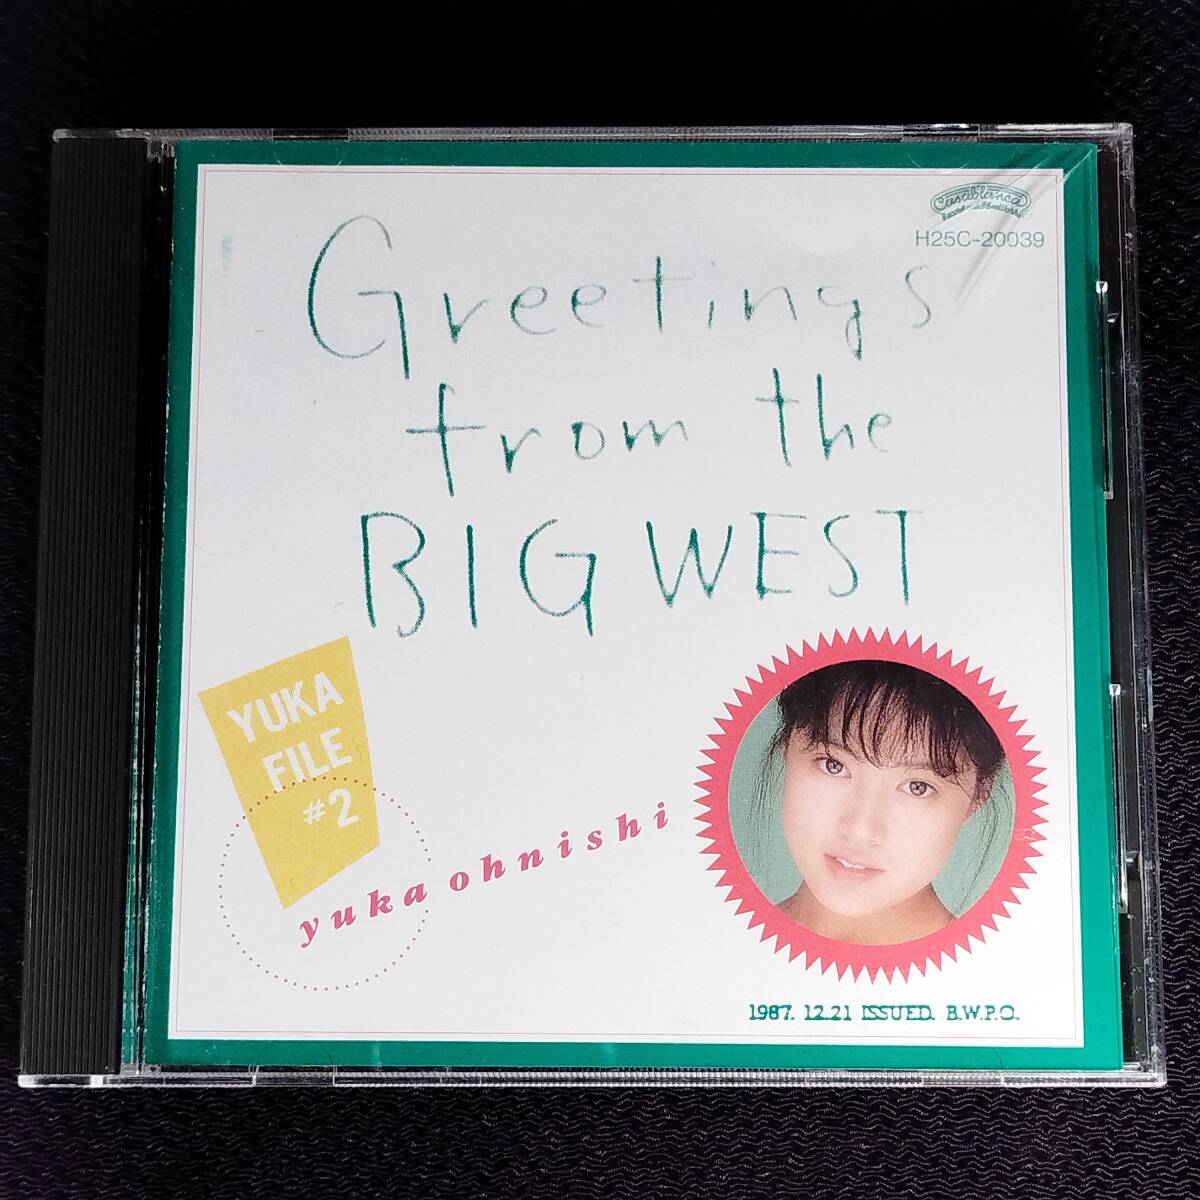 大西結花 企画盤CD／GREETING from THE BIG WEST YUKA FILE #2 1987年 80年代アイドル 廃盤_画像1